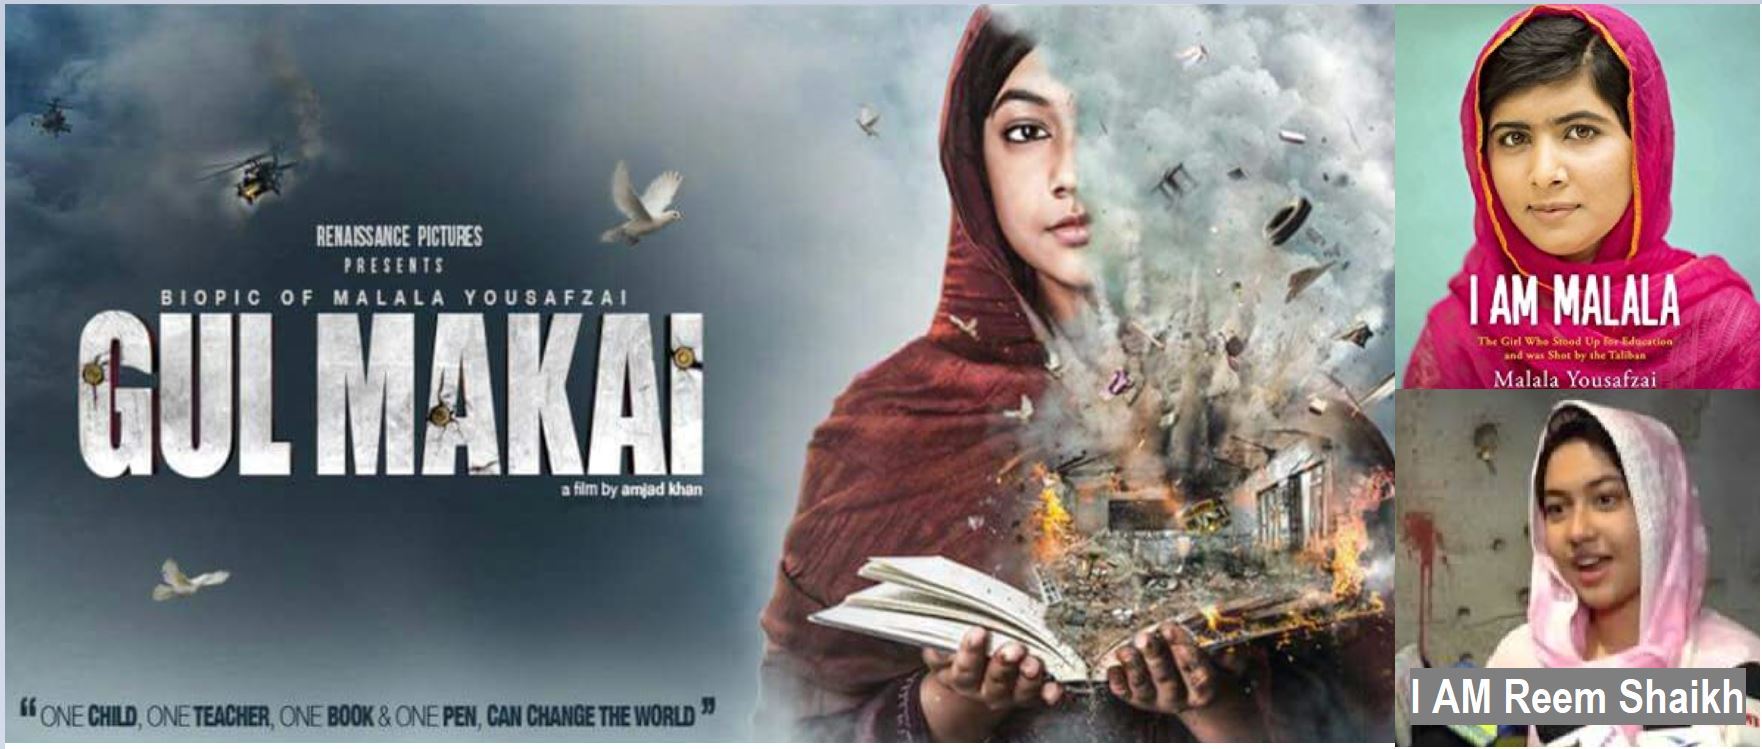 Gul Makai - Life story of Malala